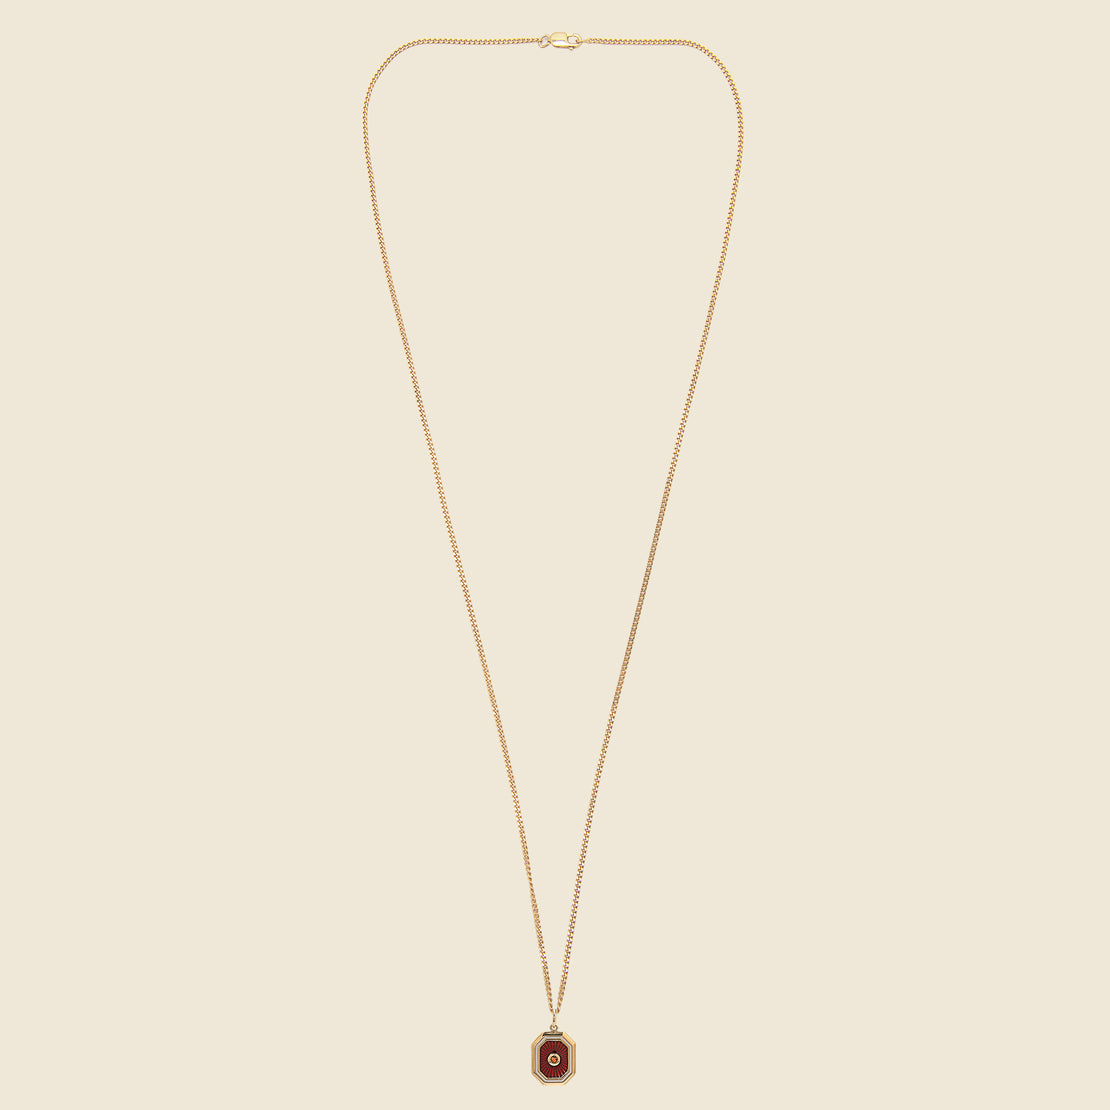 Umbra Pendant - Gold Vermeil/Garnet - Miansai - STAG Provisions - Accessories - Necklaces